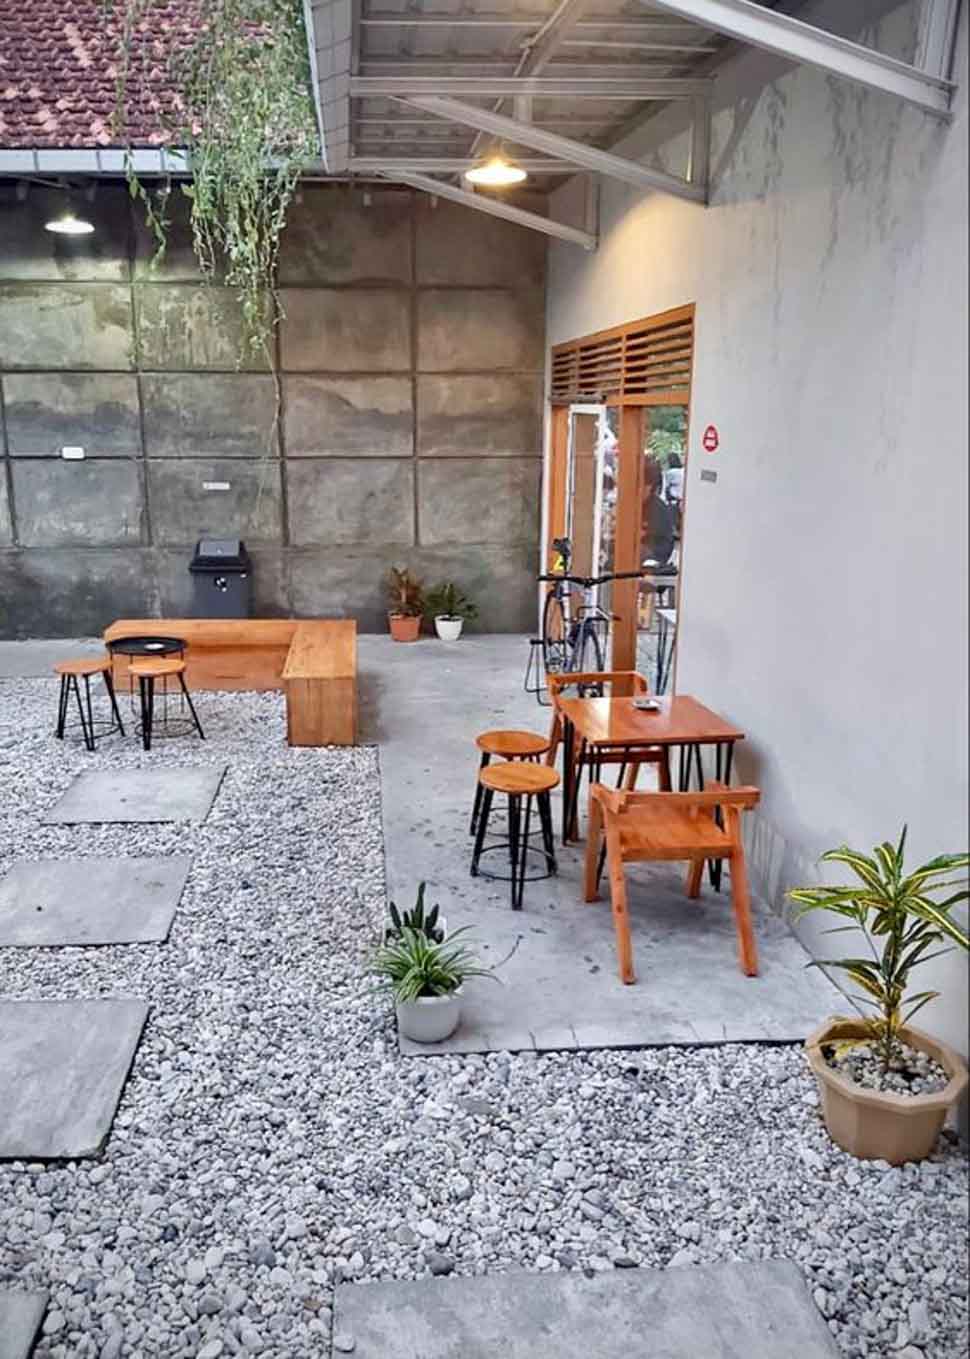 Mẫu thiết kế quán cafe nhỏ 40m2 theo phong cách trẻ trung, tươi sáng